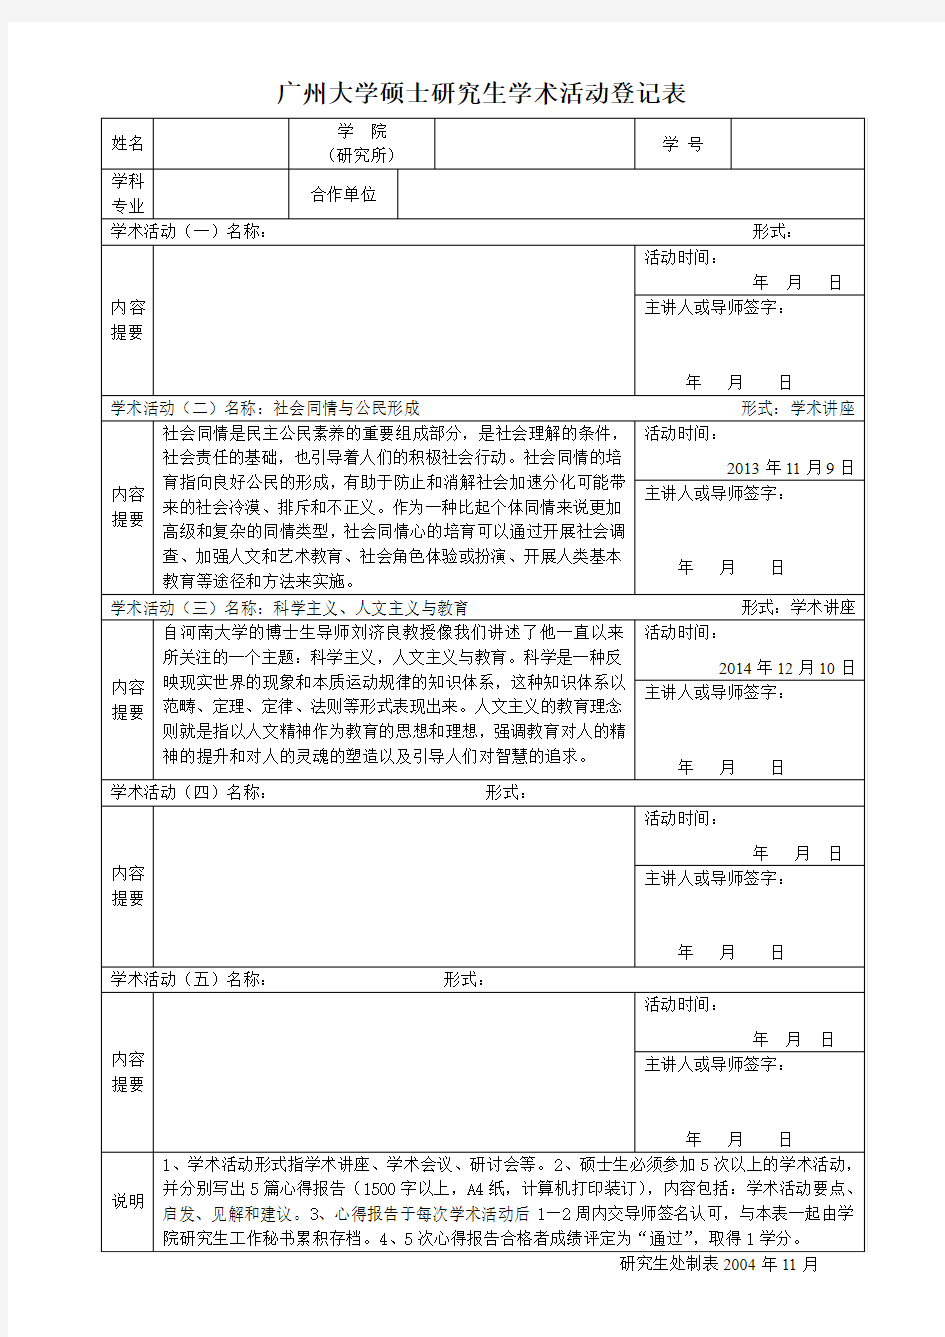 广州大学硕士研究生学术活动登记表(填写示范版)